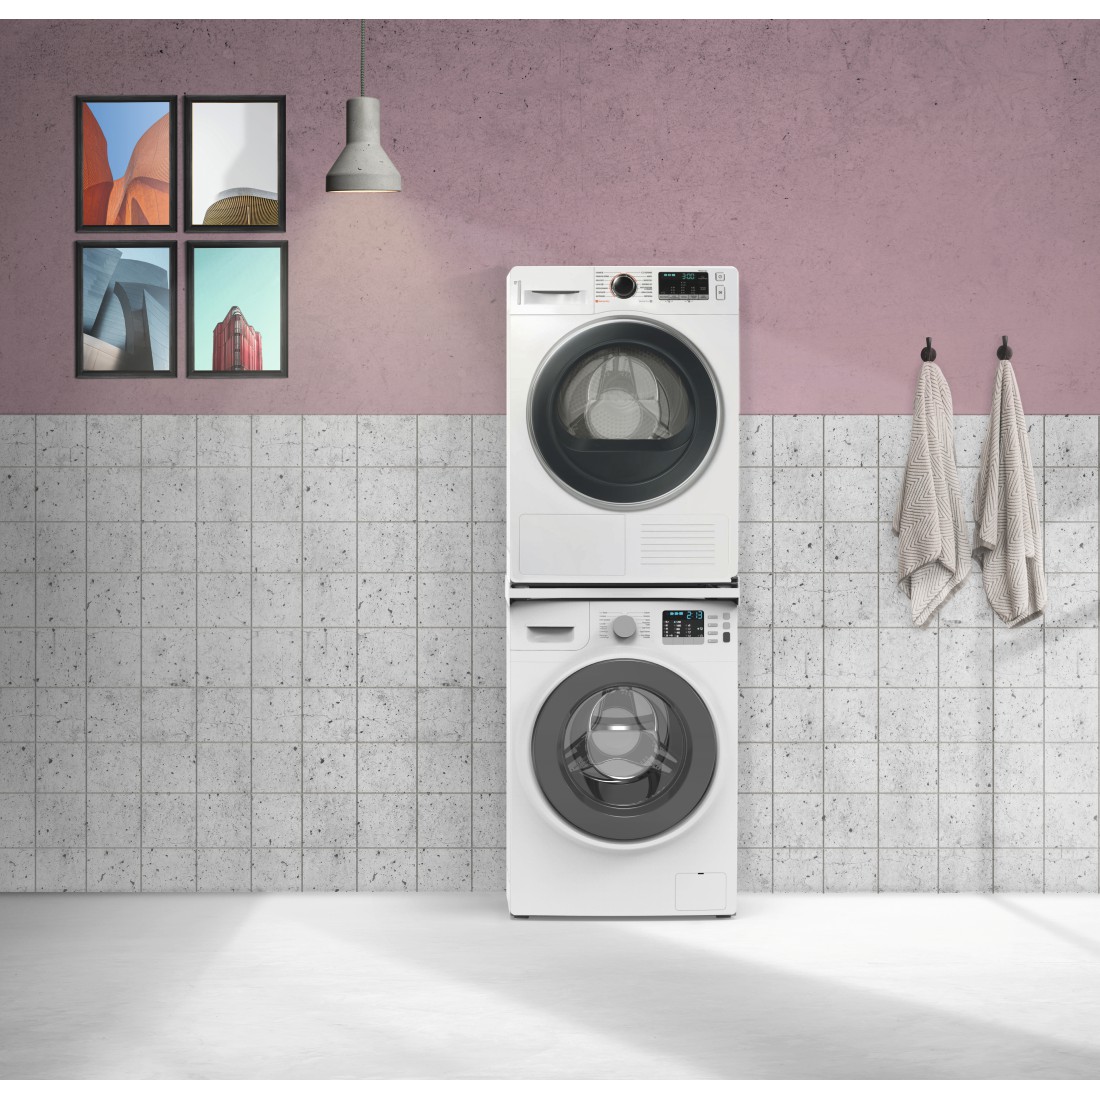 awx2 Druckfähige Anwendung 2 - Xavax, Zwischenbausatz Basic für Waschmaschinen/Trockner, Kunststoff